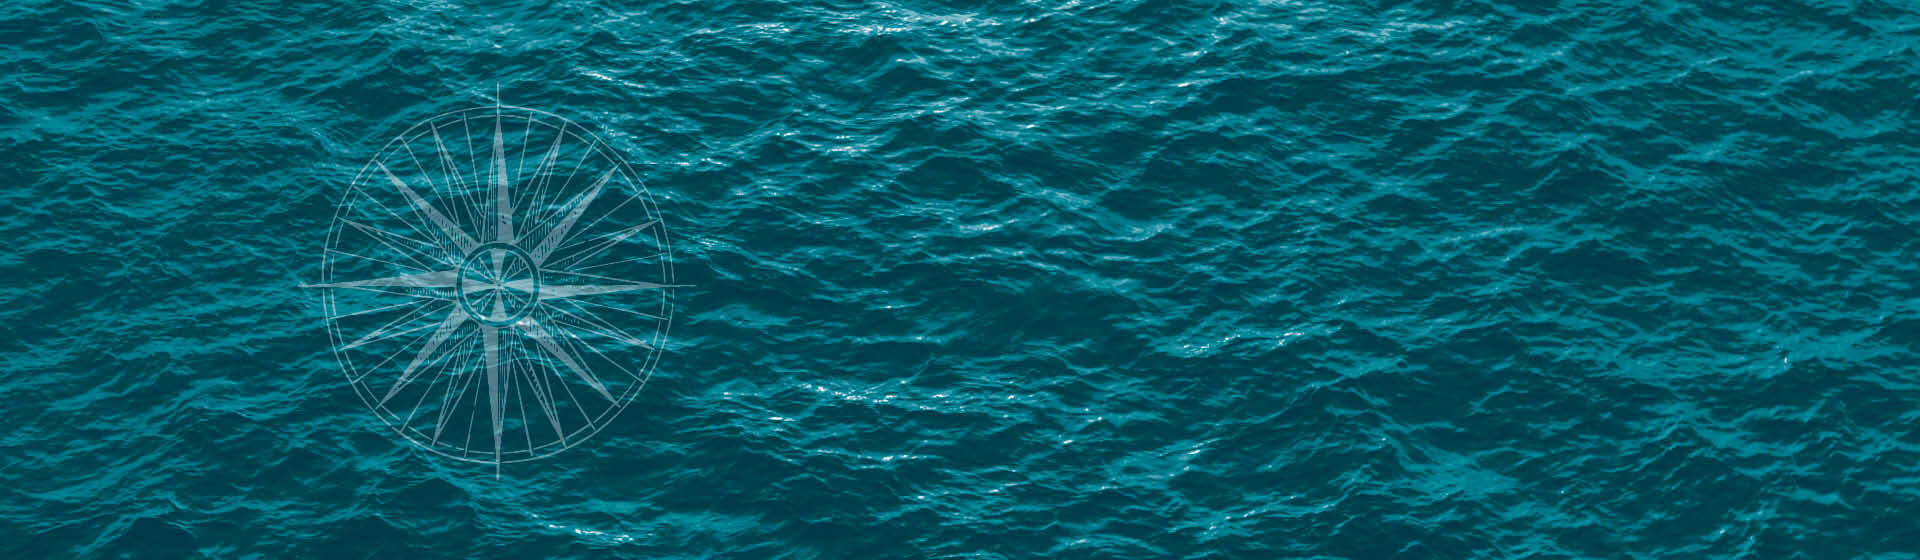 mer bleue avec rose des vents